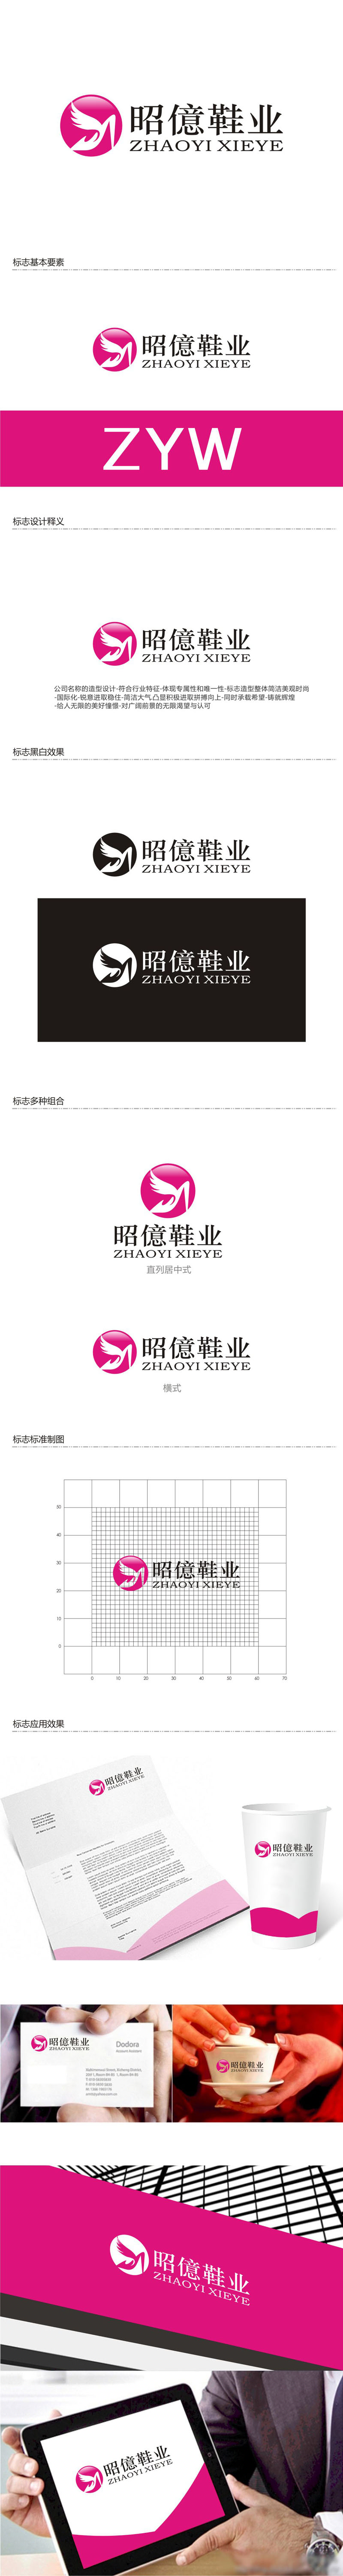 孙永炼的昭億鞋业logo设计